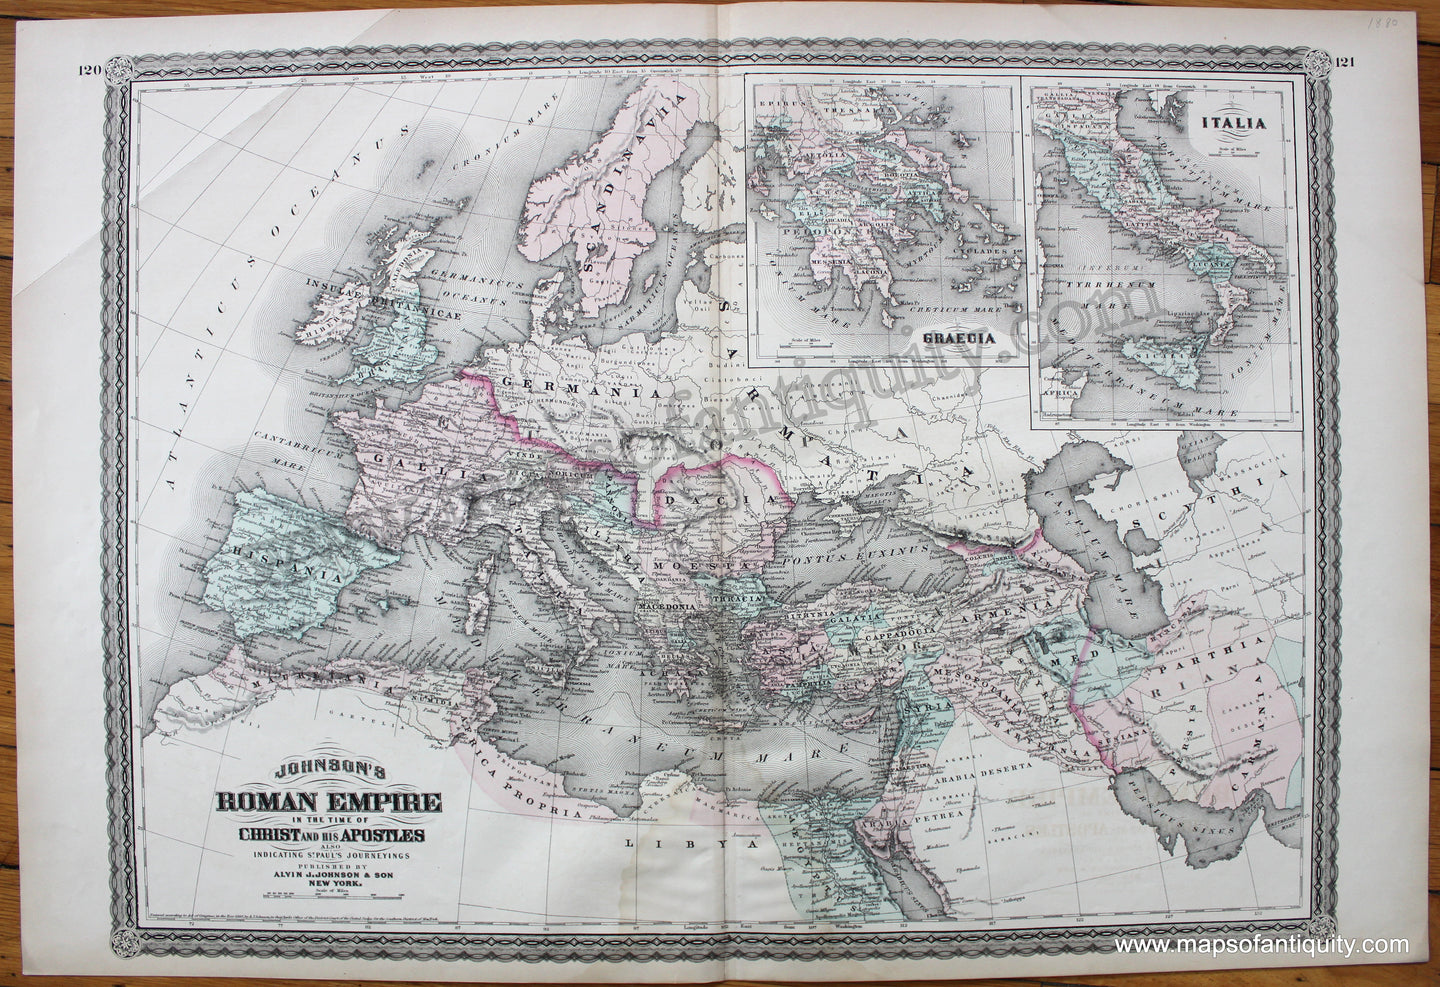 Antique-Map-Johnson's-Roman-Empire-Imperium-Romanorum-Latissme-Patens-1880-1800s-19th-century-time-of-Christ-Apostles-Saint-Paul